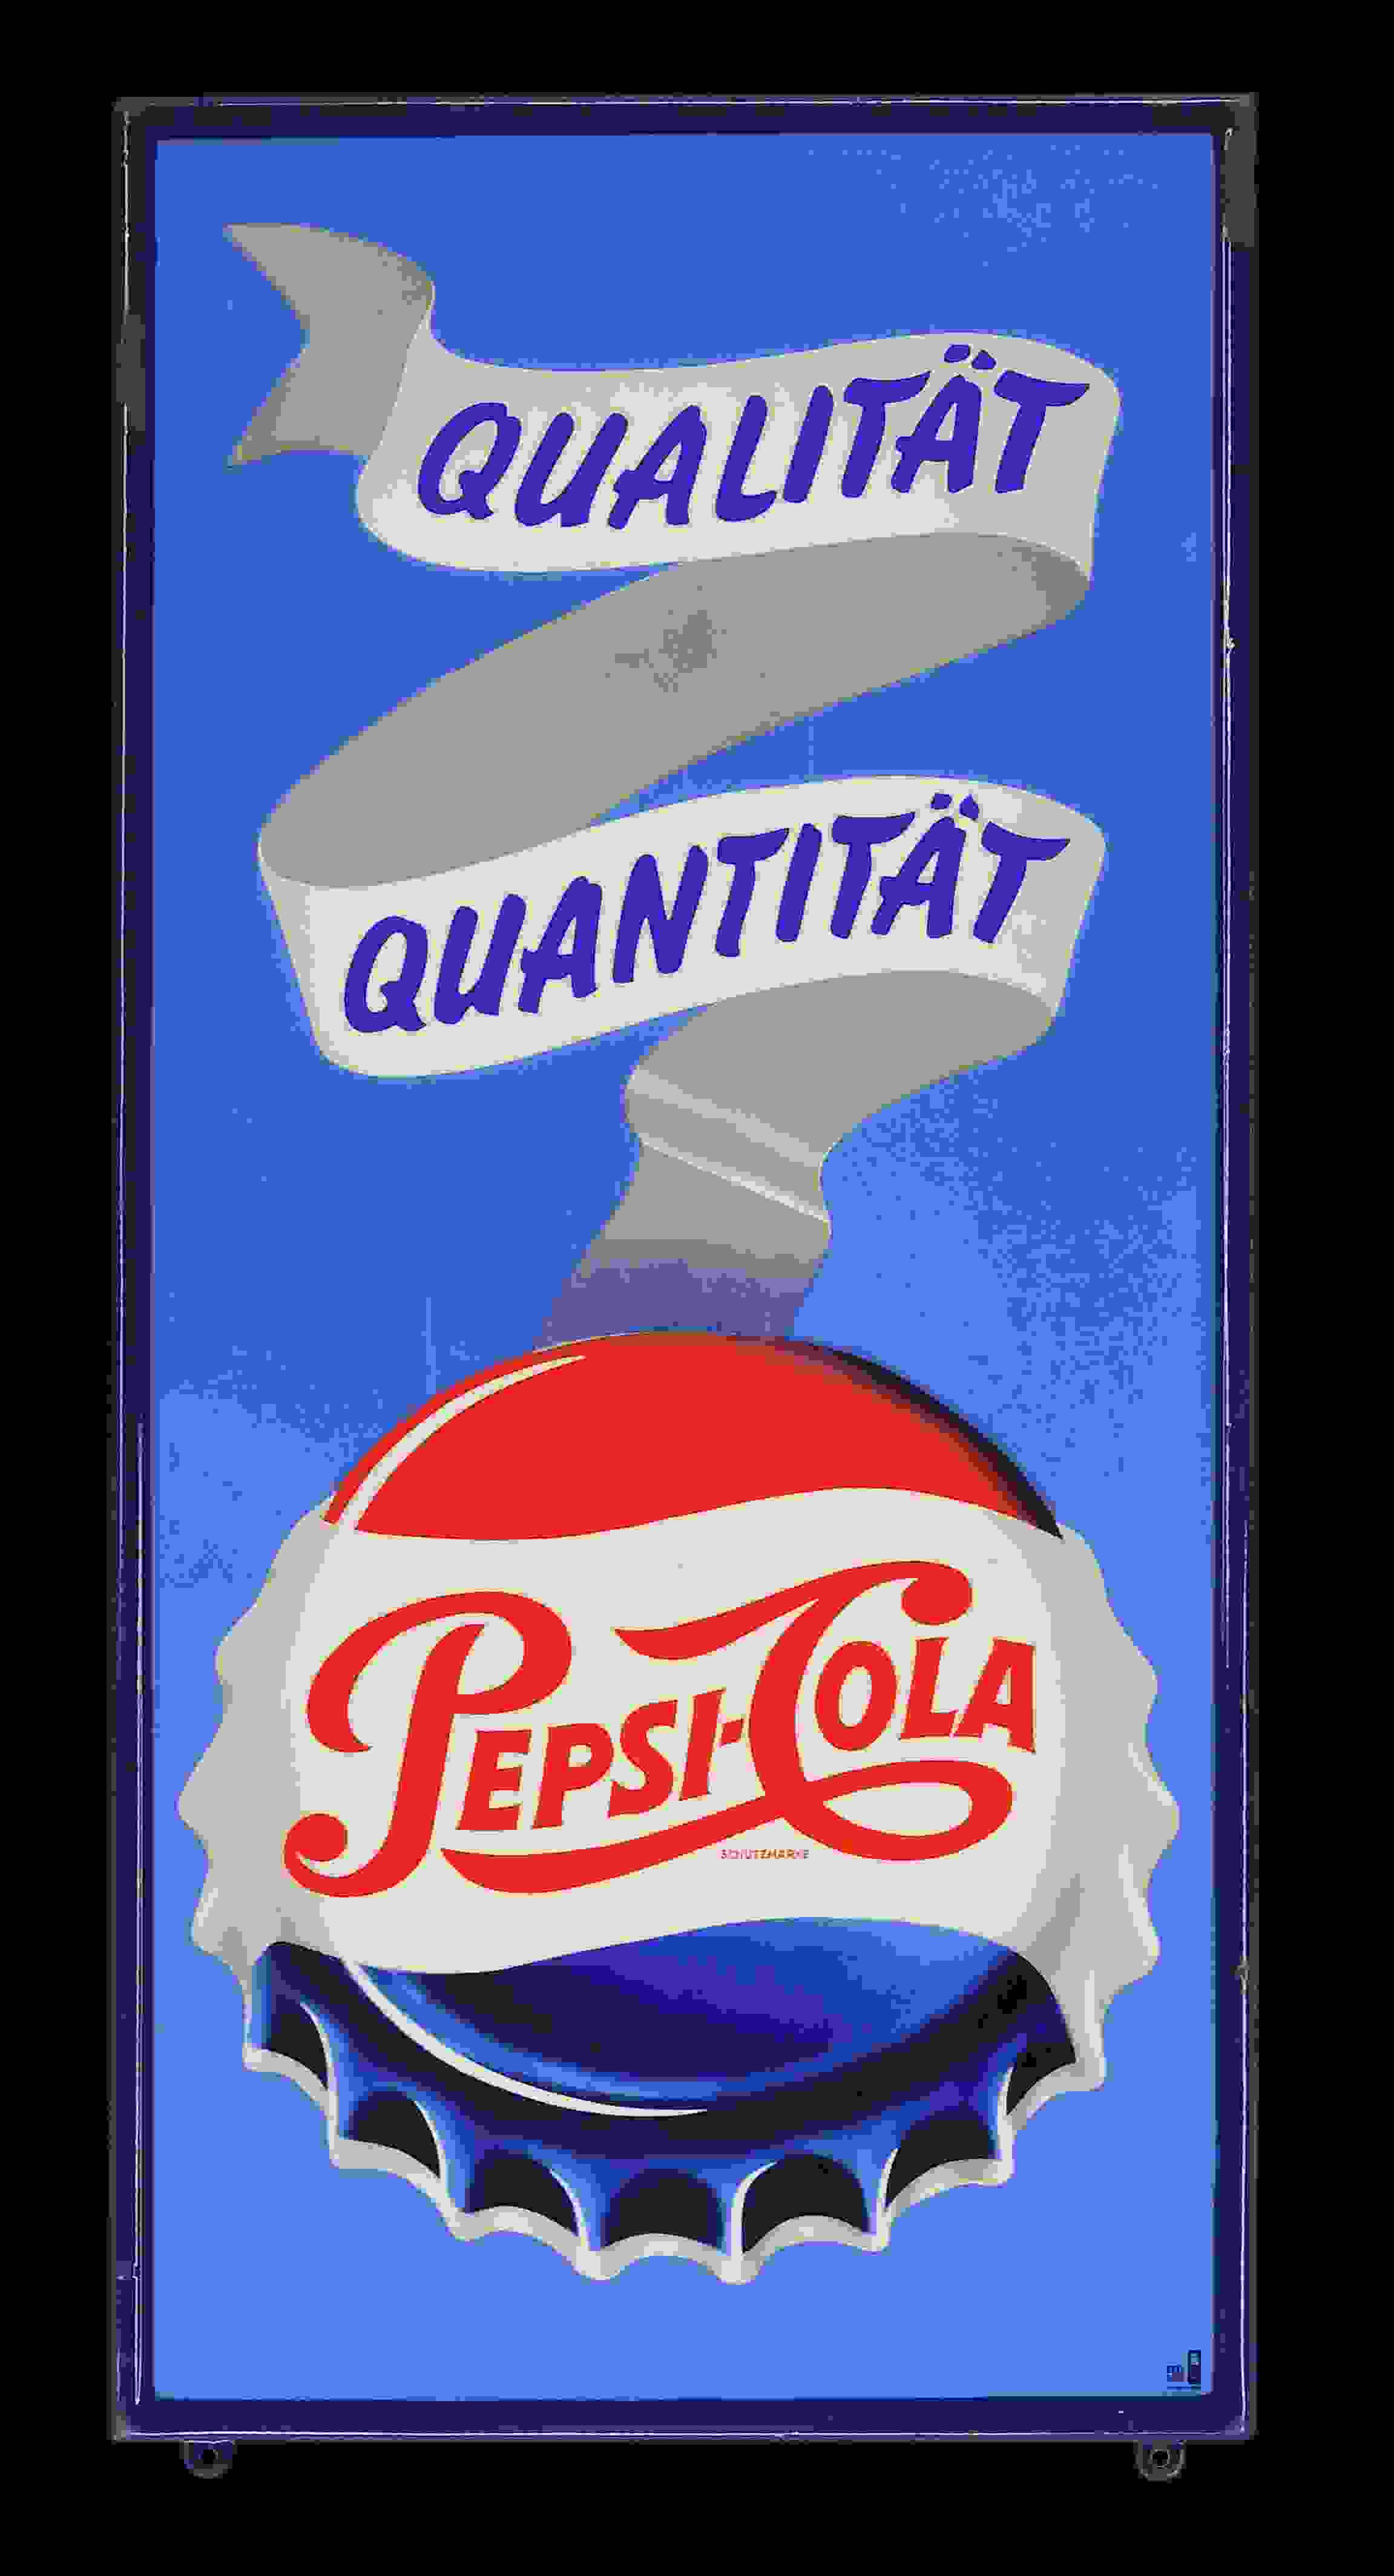 Pepsi-Cola Qualität Quantität 